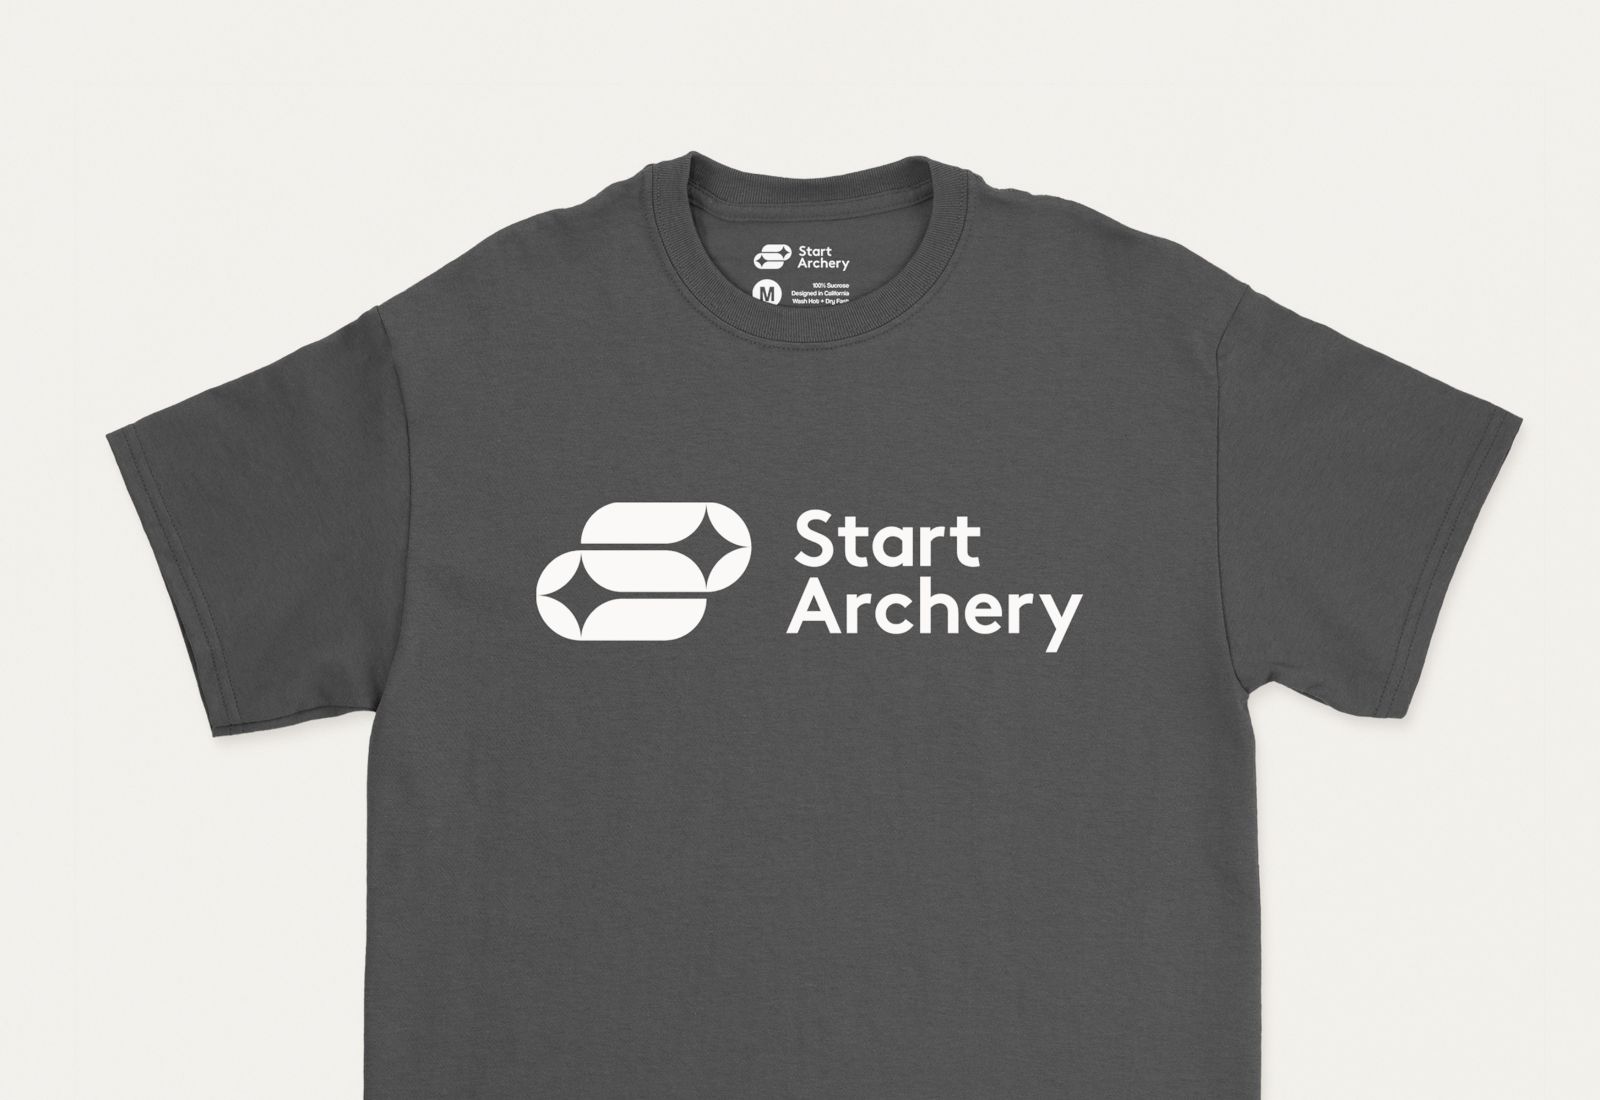 Start Archery T-Shirt Design Merchandise 93ft